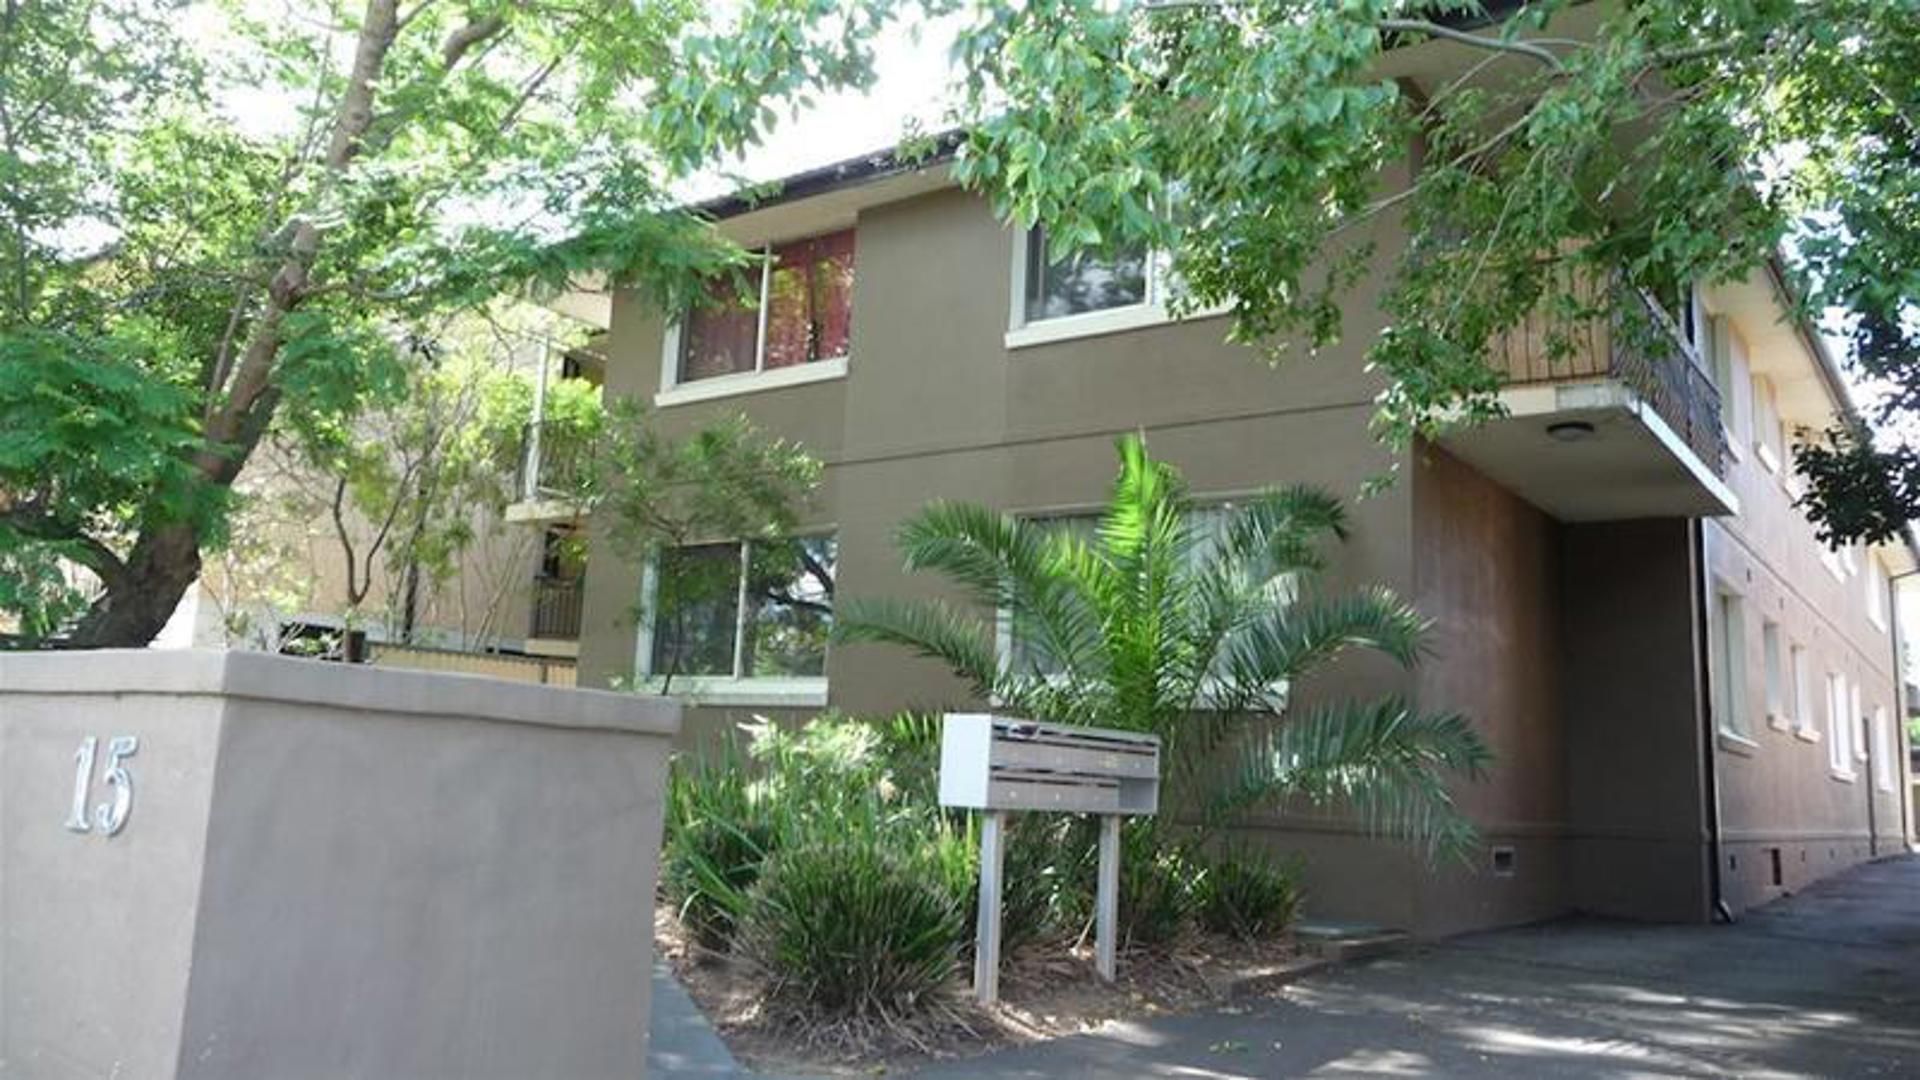 2 bedrooms Apartment / Unit / Flat in 1/15 Todd Street MERRYLANDS NSW, 2160